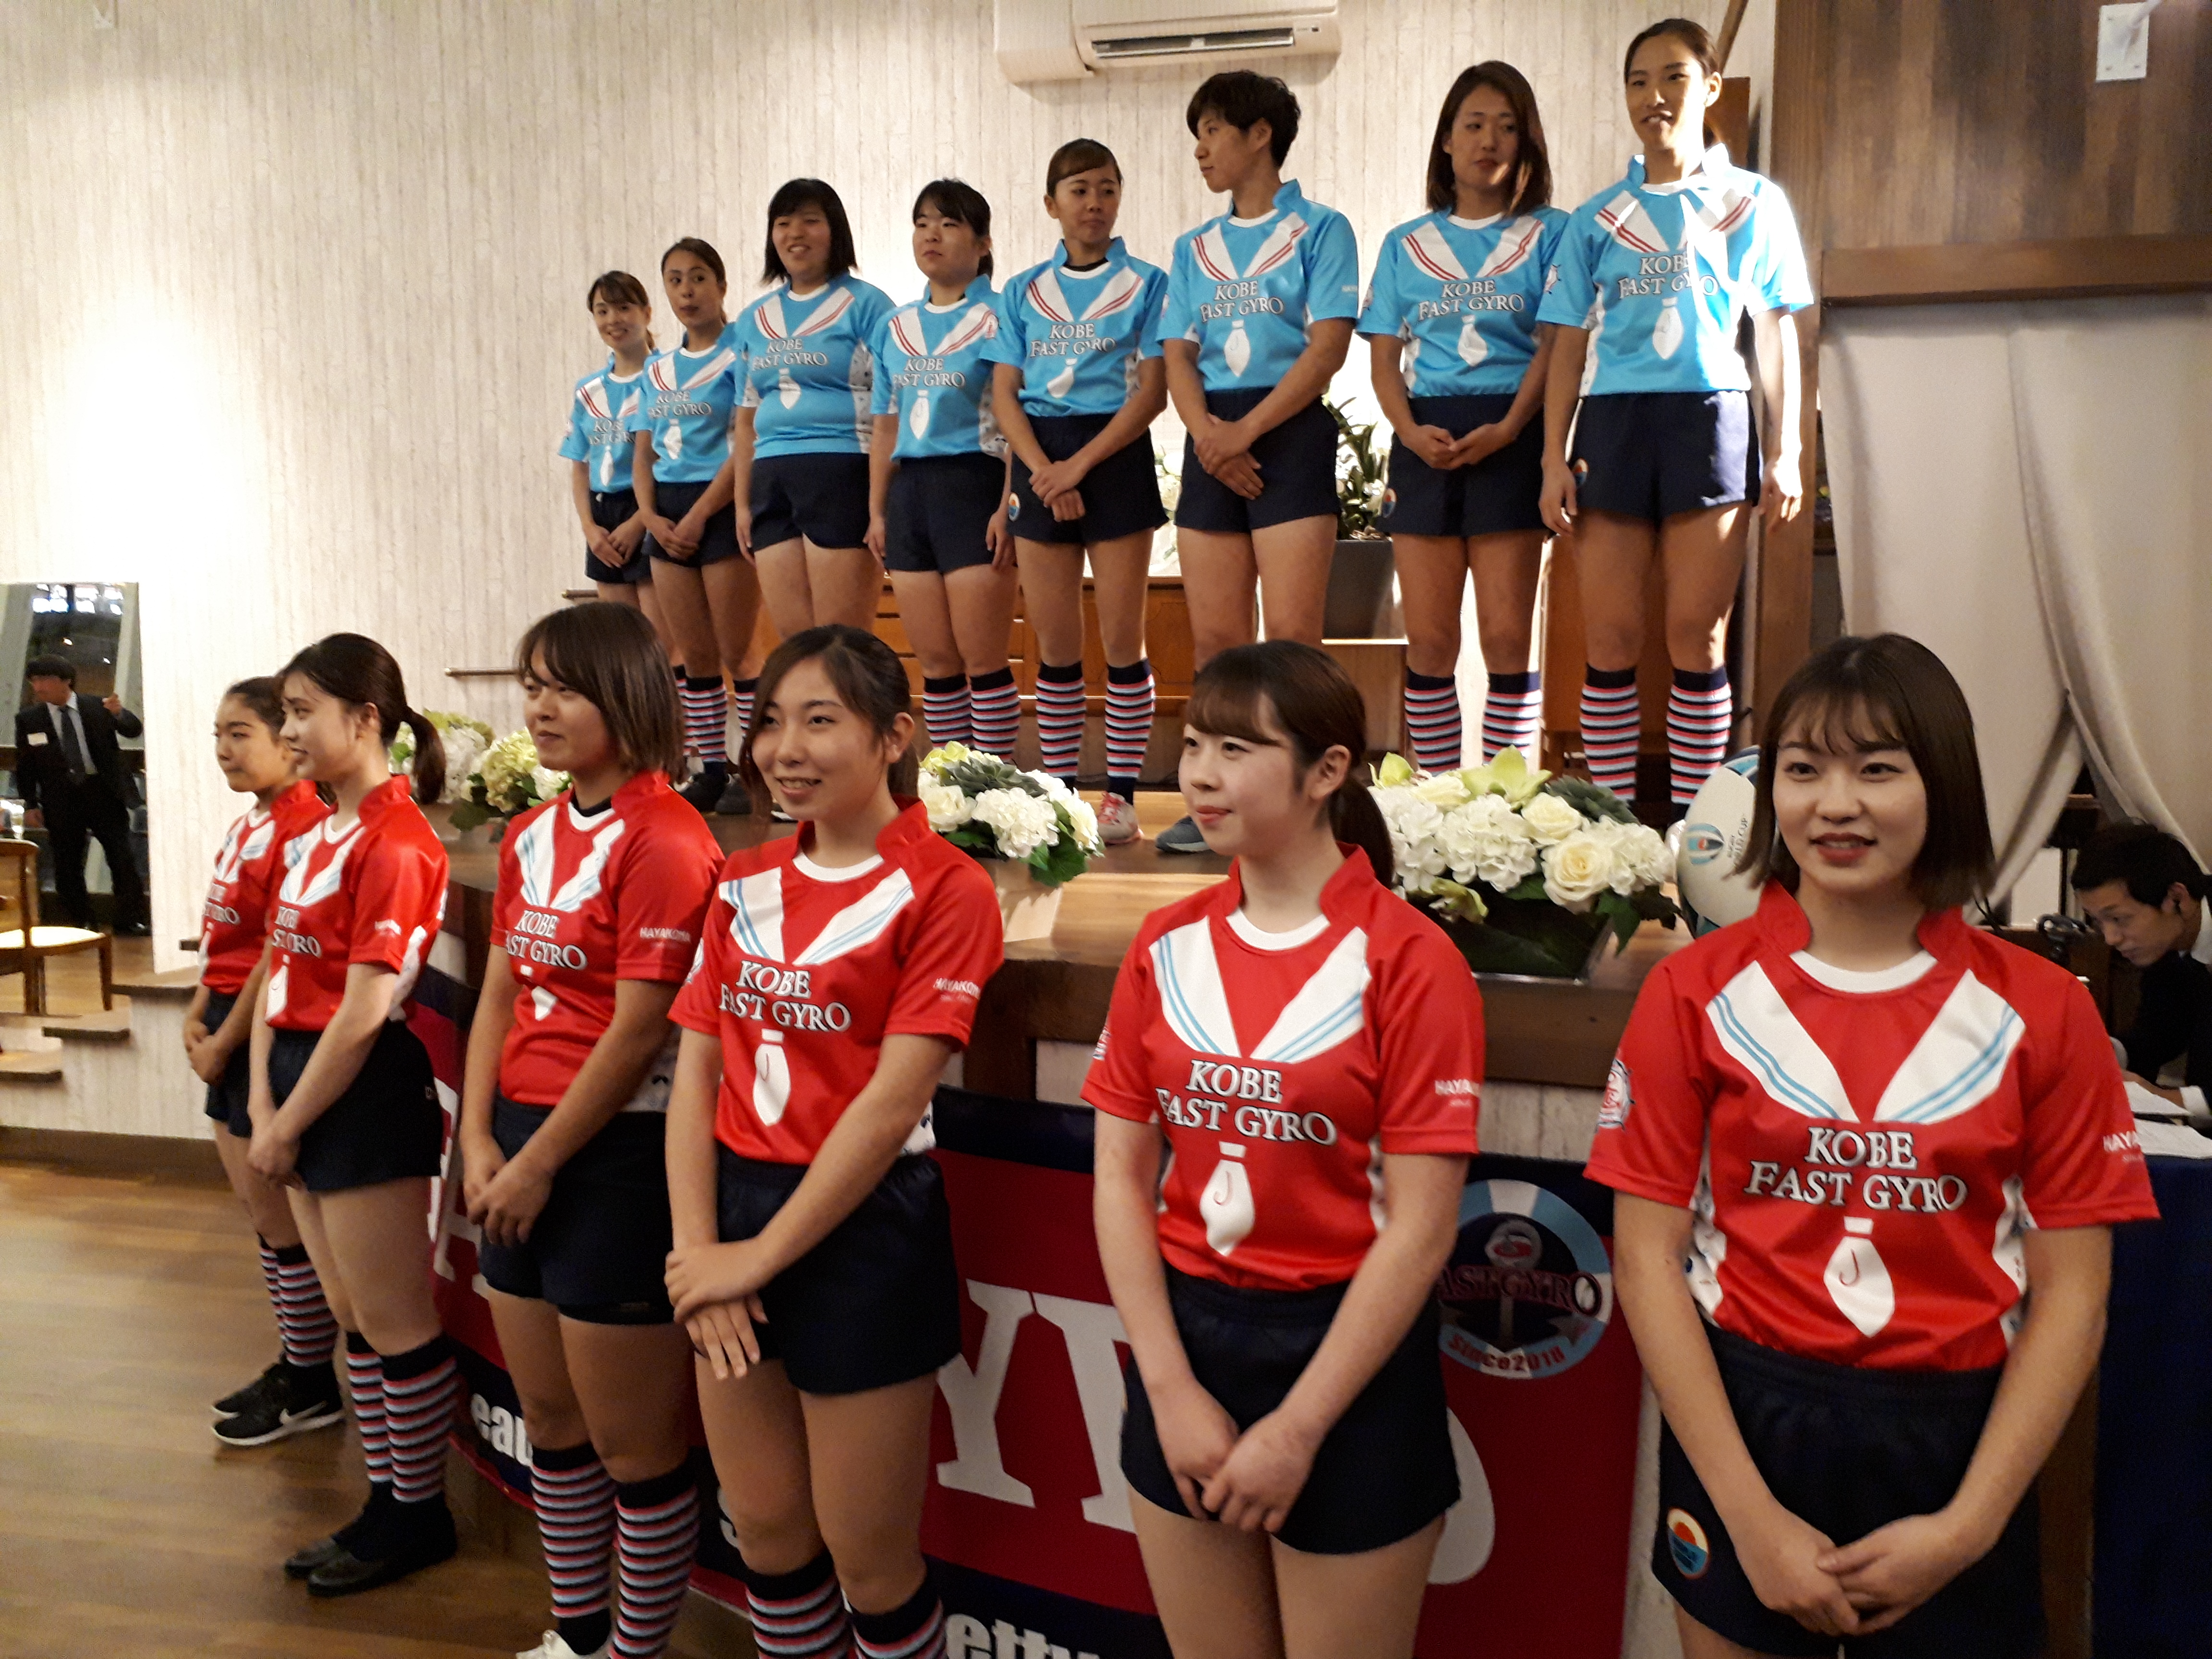 女子ラグビーチーム 神戸ファストジャイロ 一般社団法人として再出発 女子ラグビー大会を神戸で開催へ ラジトピ ラジオ関西トピックス